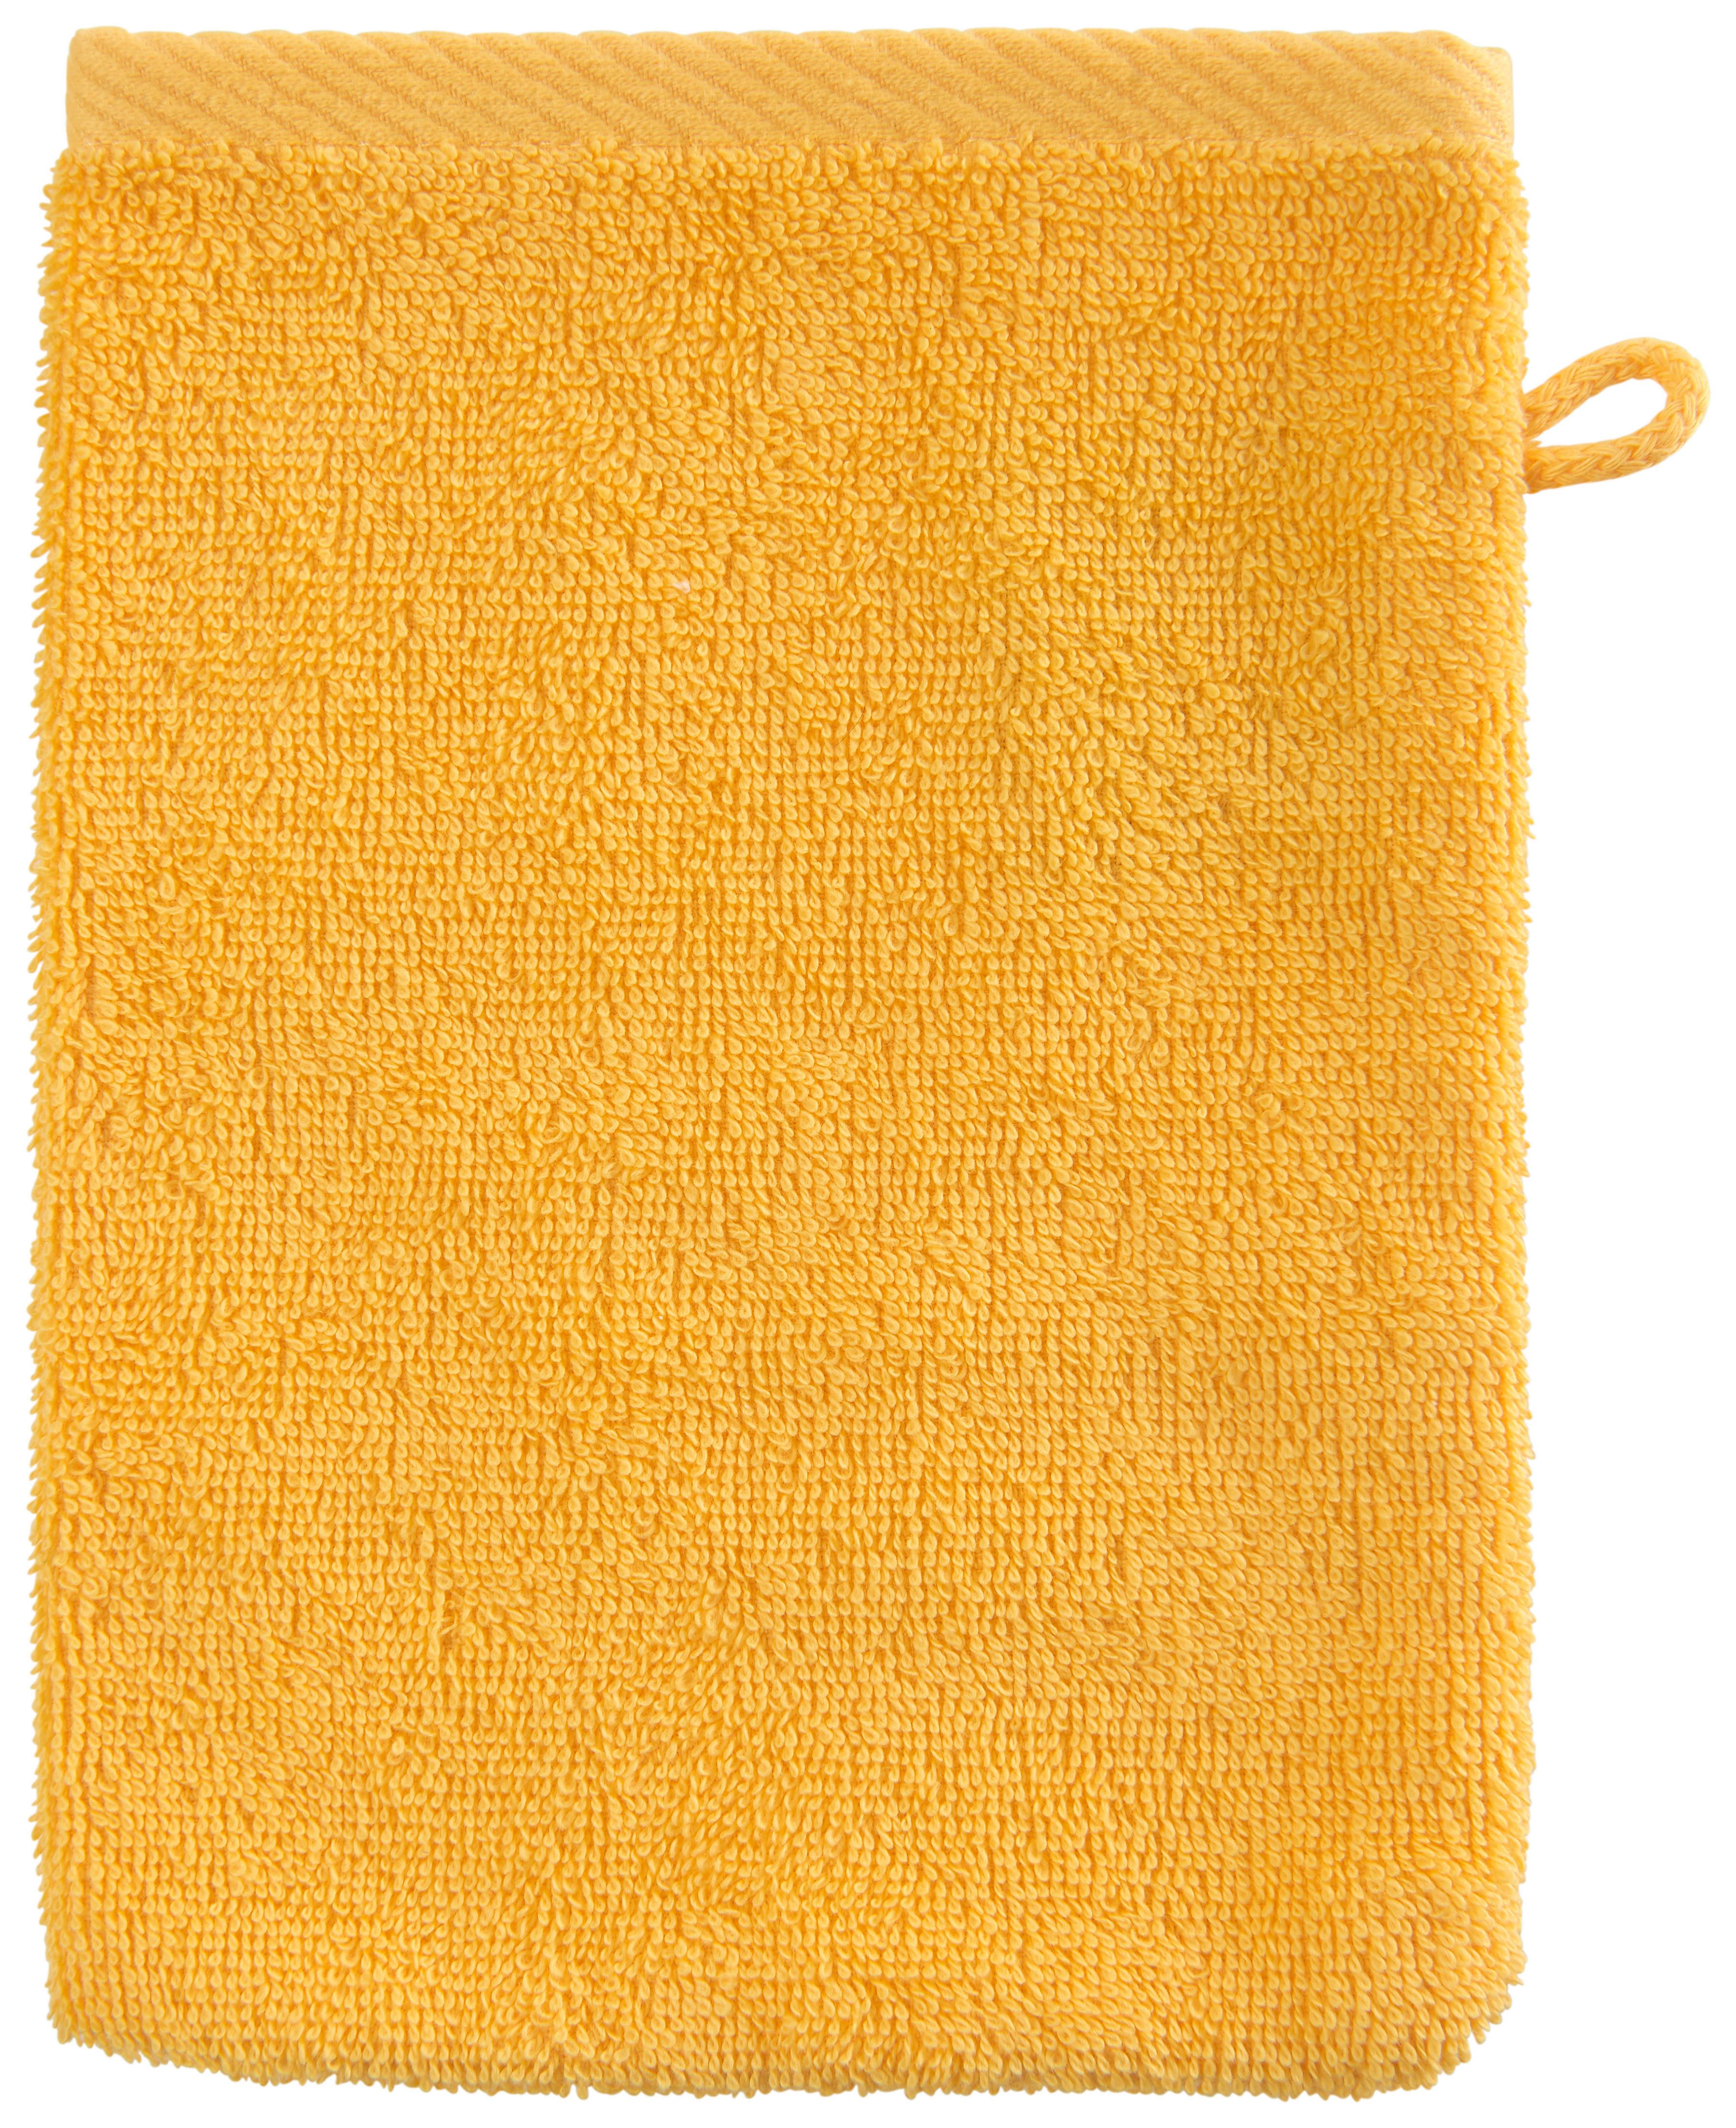 MOSDÓKESZTYŰK 16/22 cm Sárga  - Sárga, Konventionell, Textil (16/22cm) - Esposa